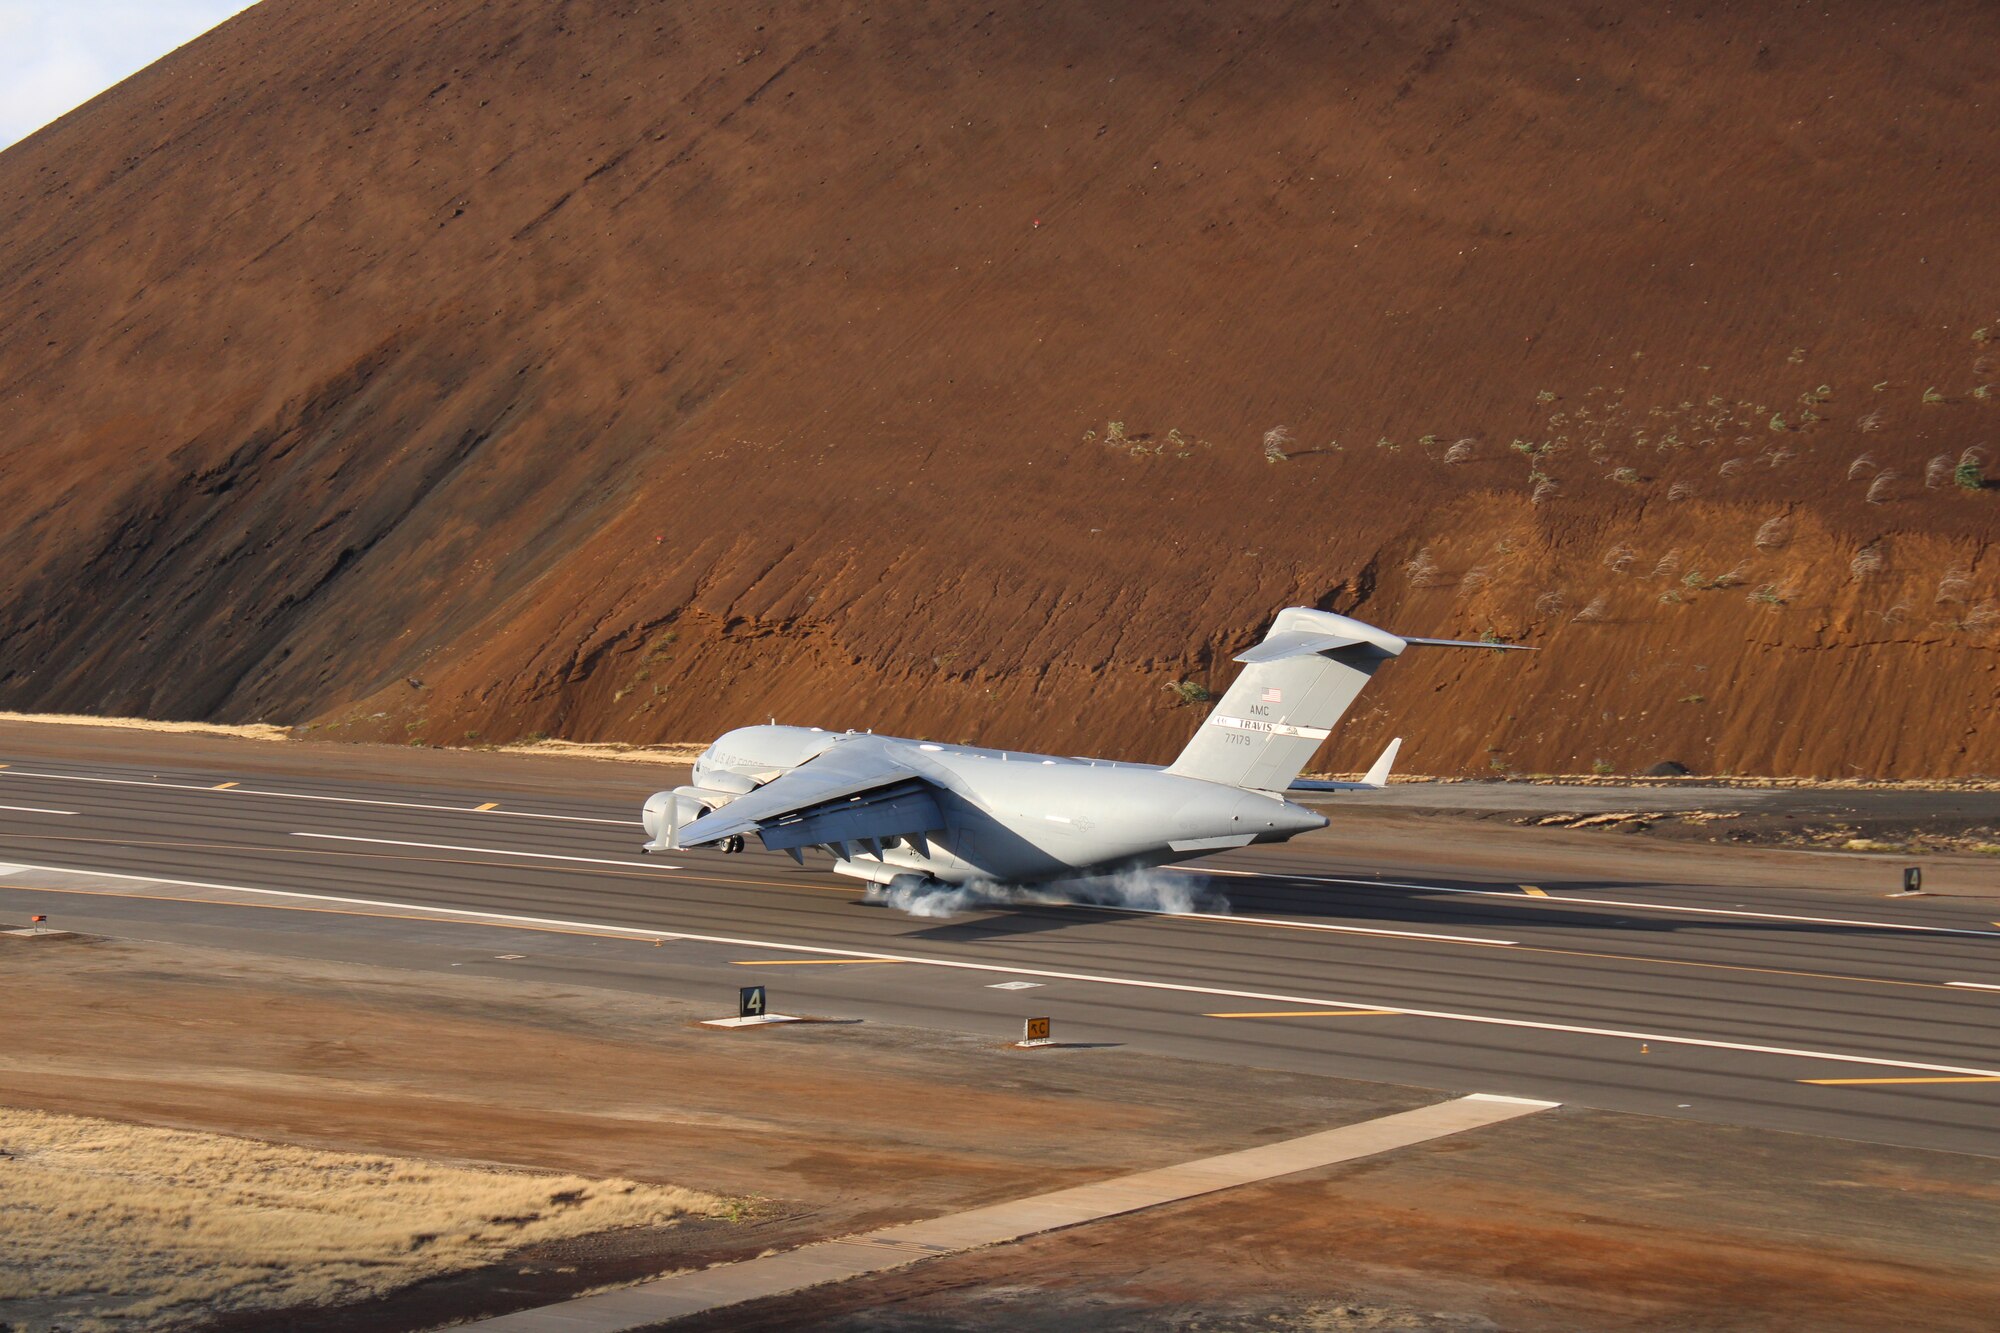 C-17 Globemaster lands on Ascension Island